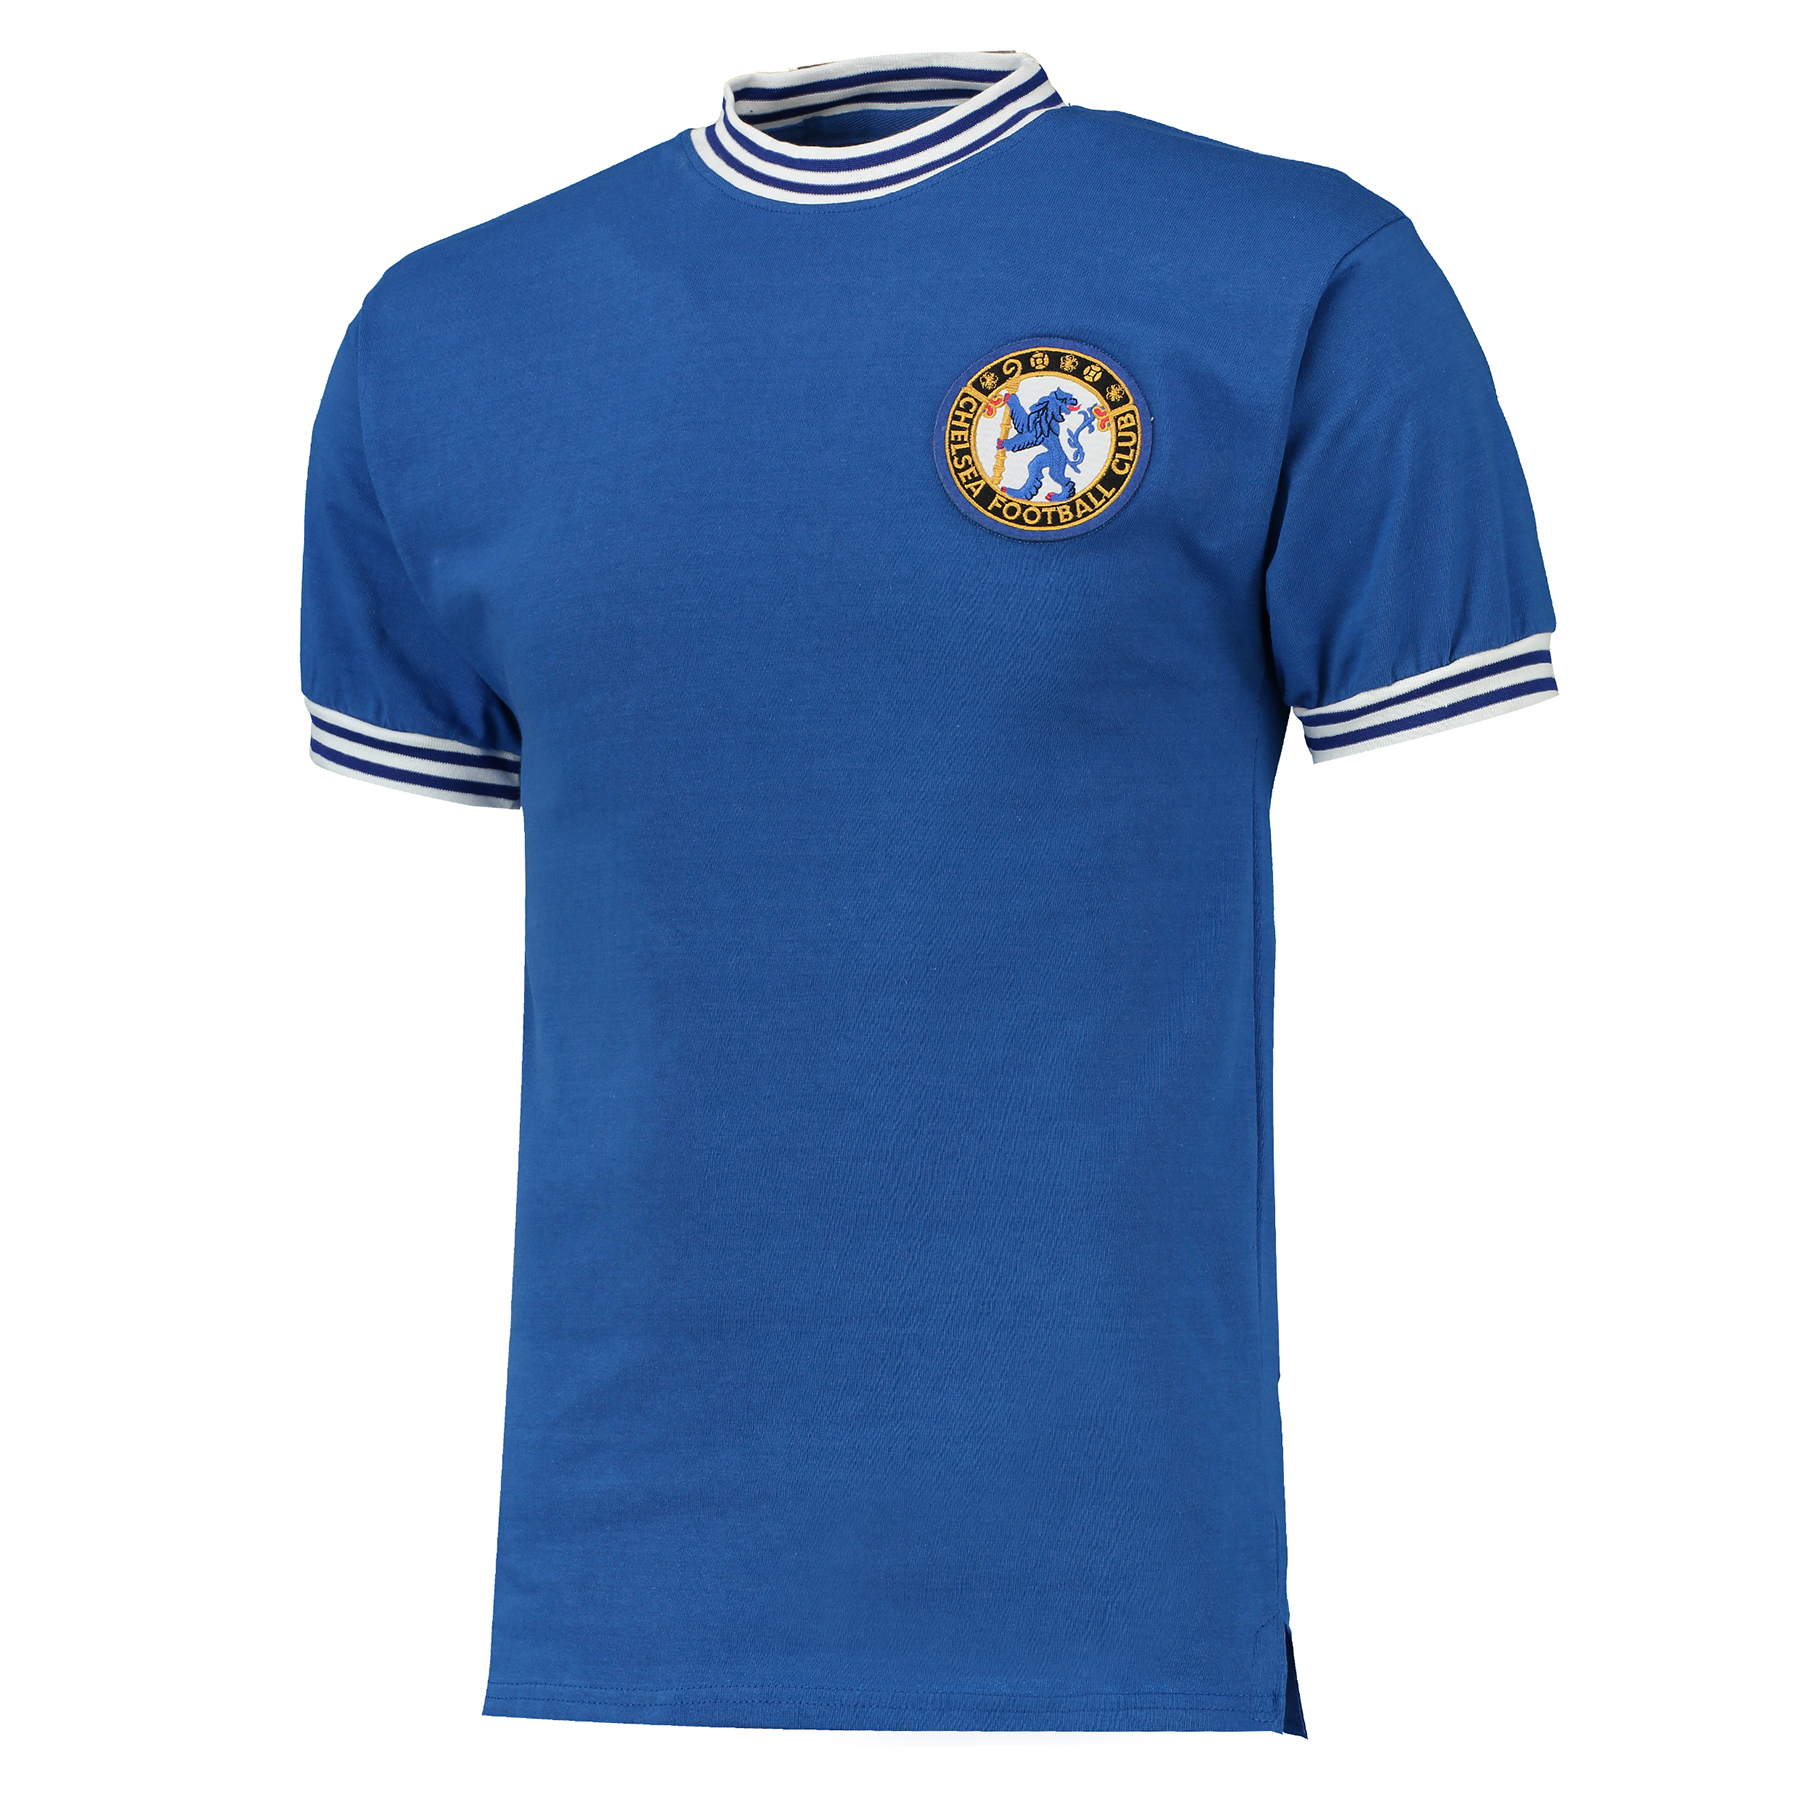 Chelsea 1963 Home Shirt Royal